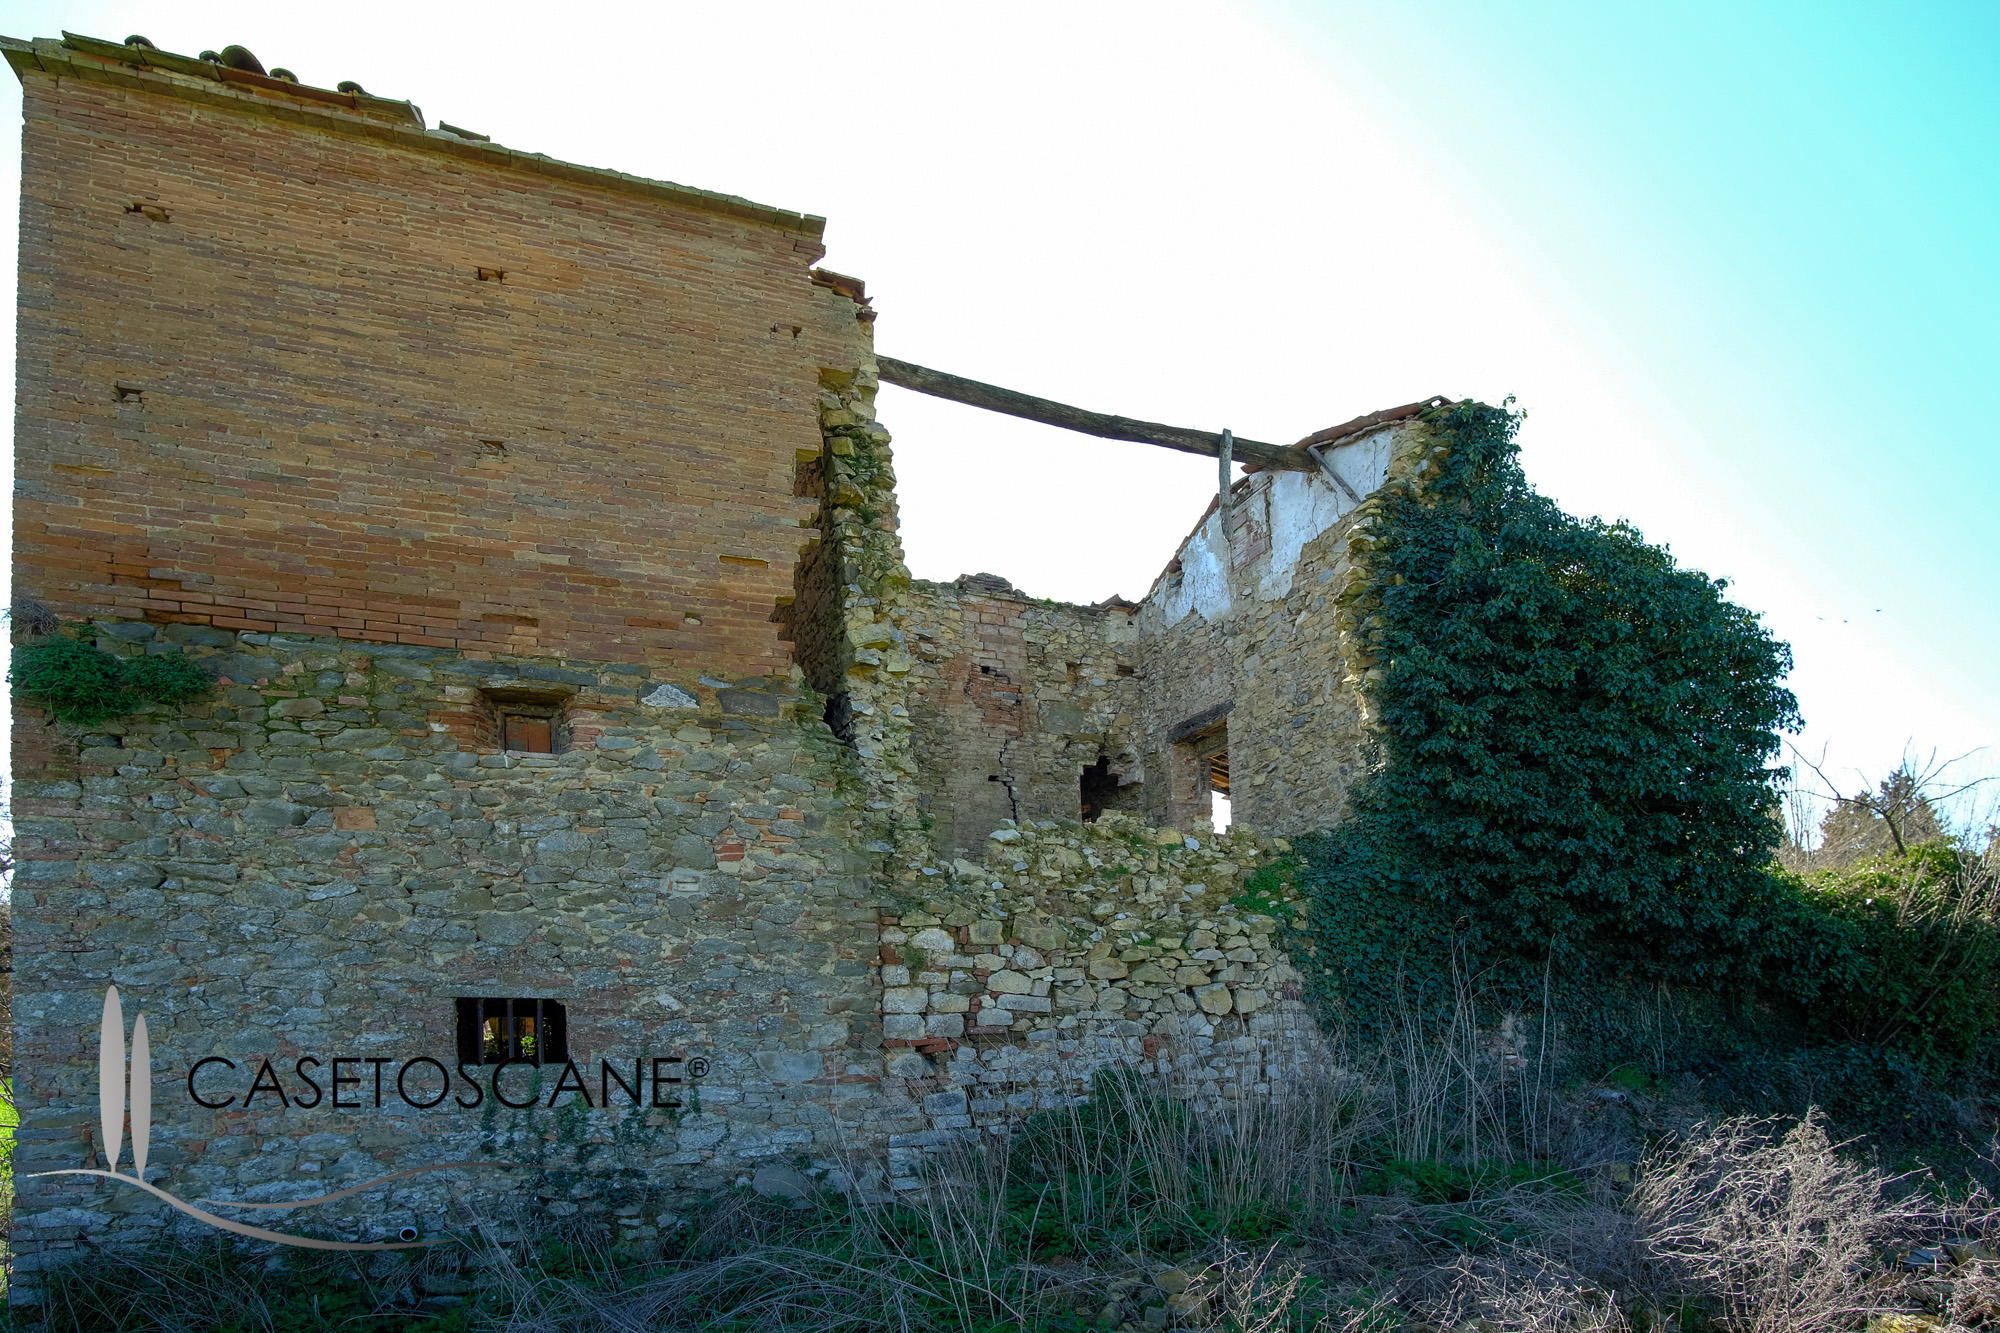 3182 - Antico casale completamente da ristrutturare, di circa mq.200 con ampio terreno agricolo di ha.2 con olivi e seminativo a Lucignano (AR).